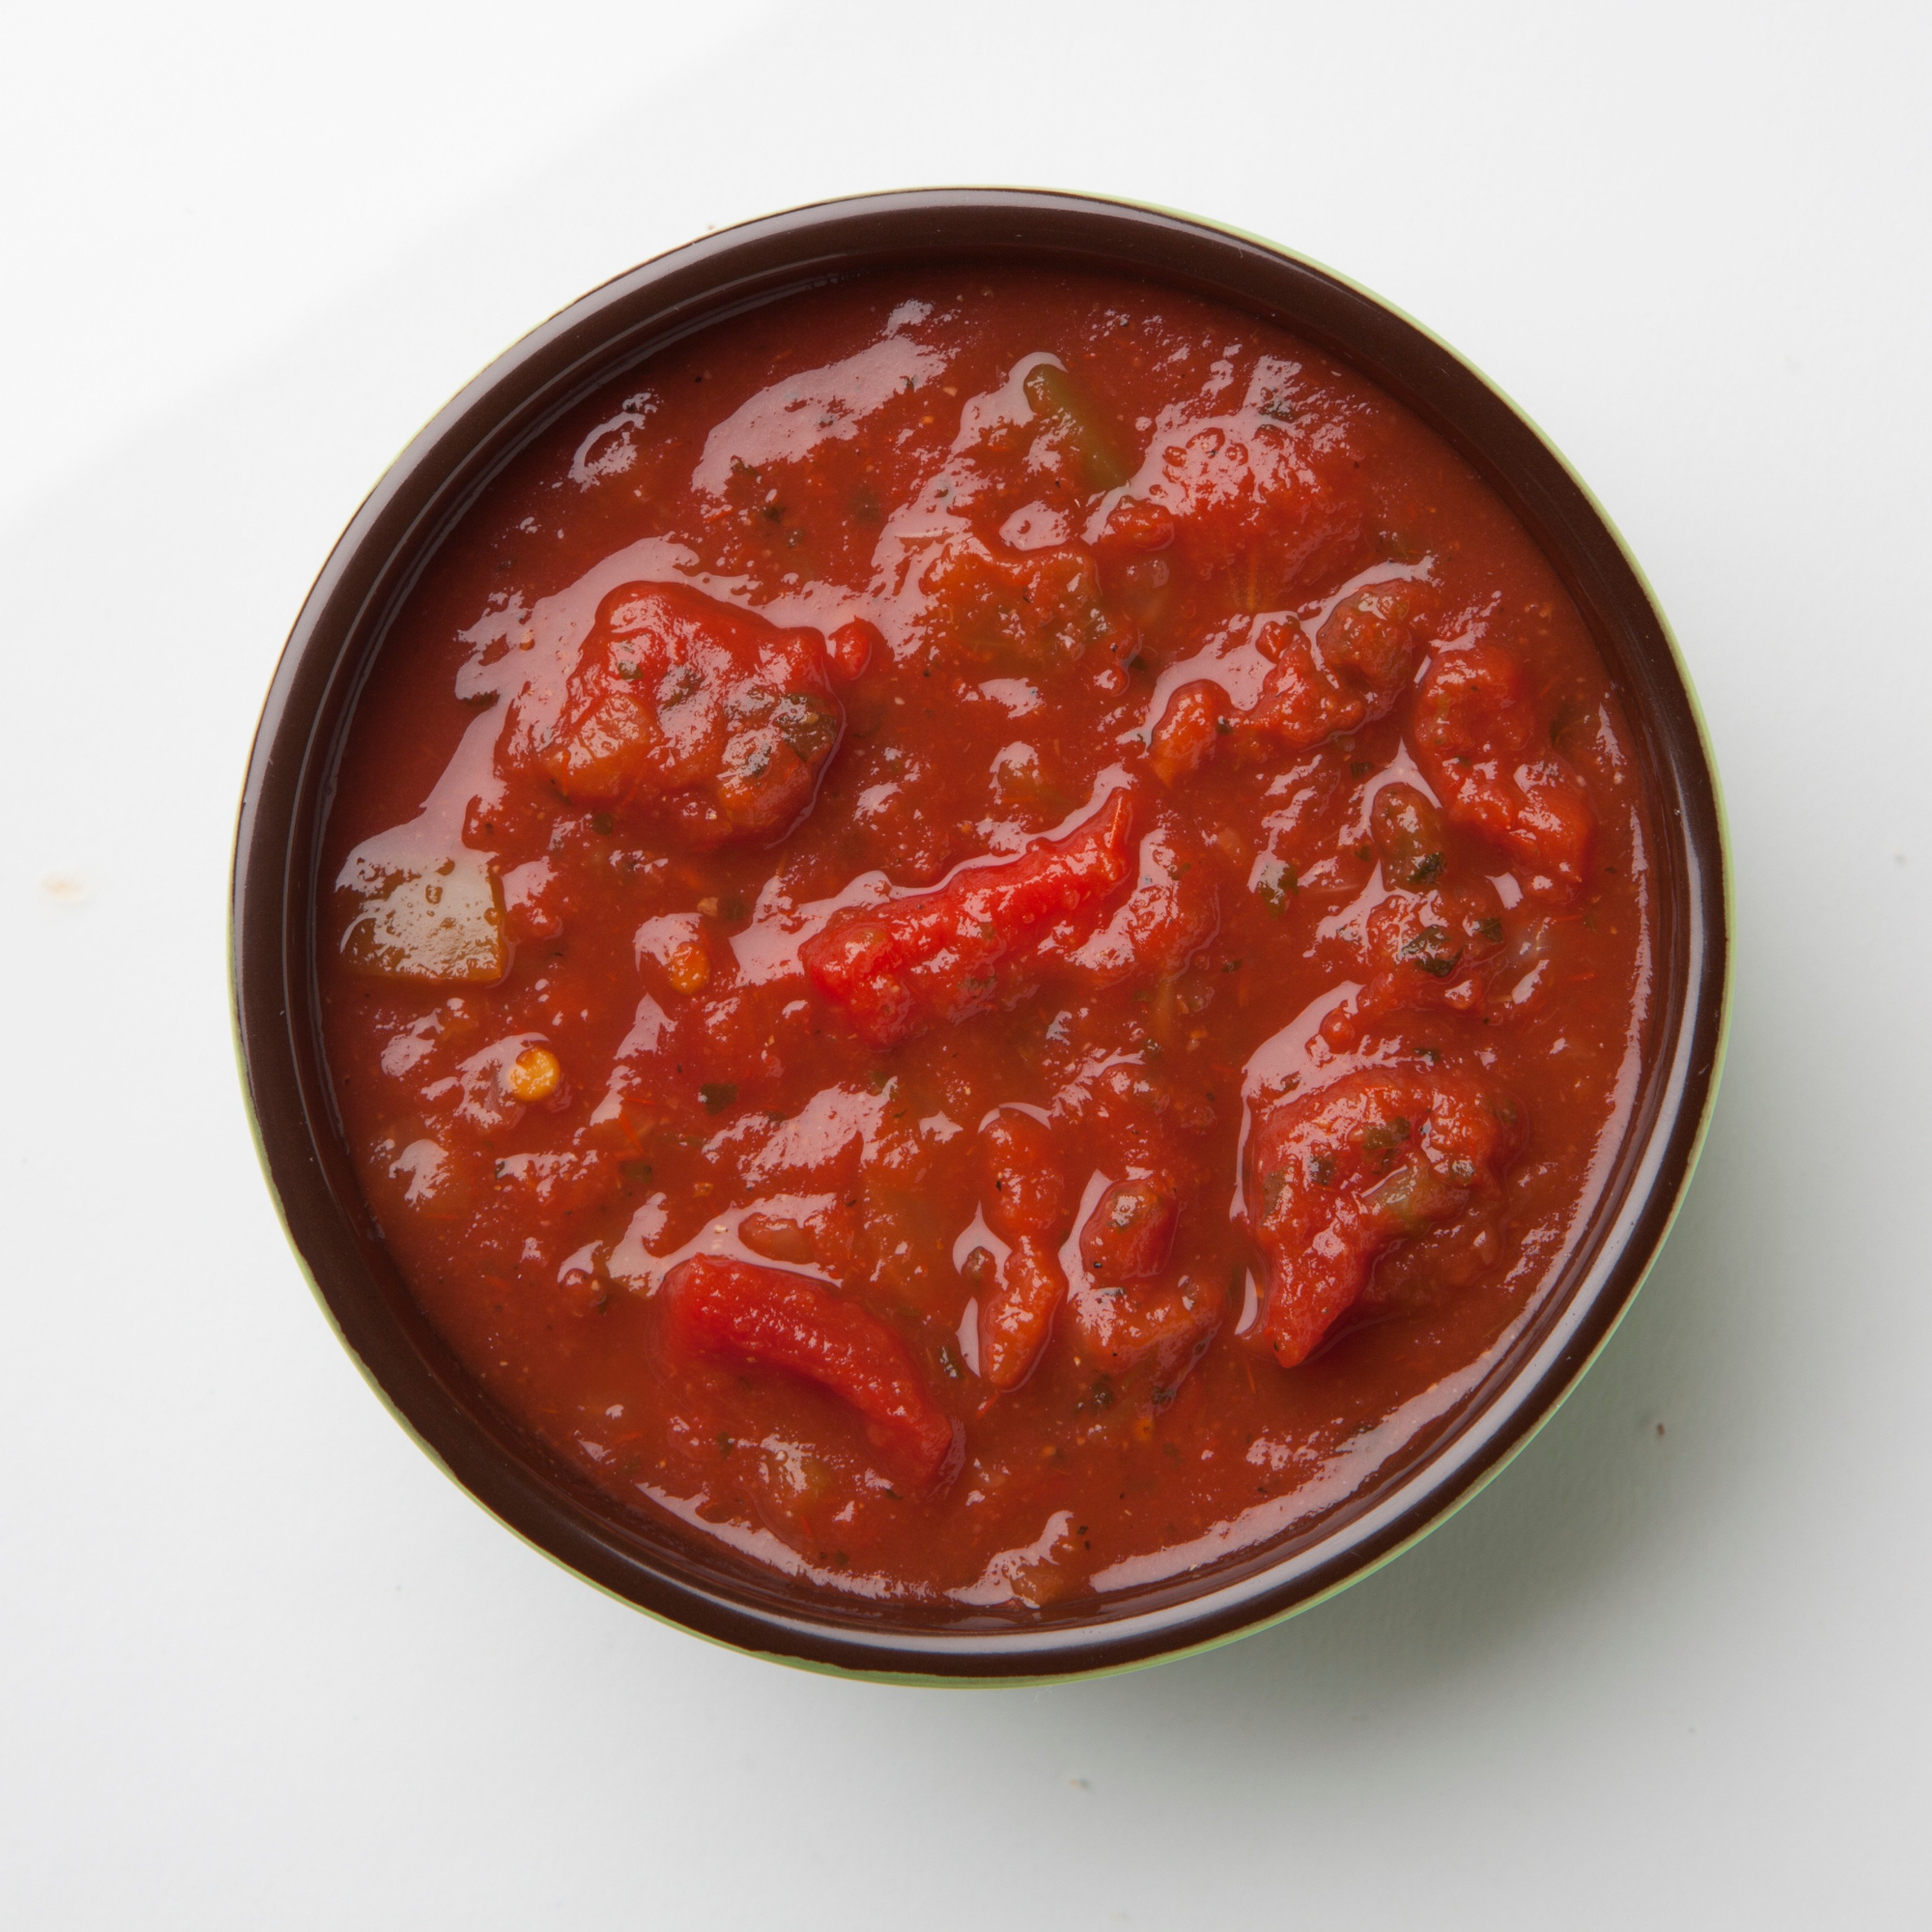 томатный соус с базиликом к пасте или пицце фото 115